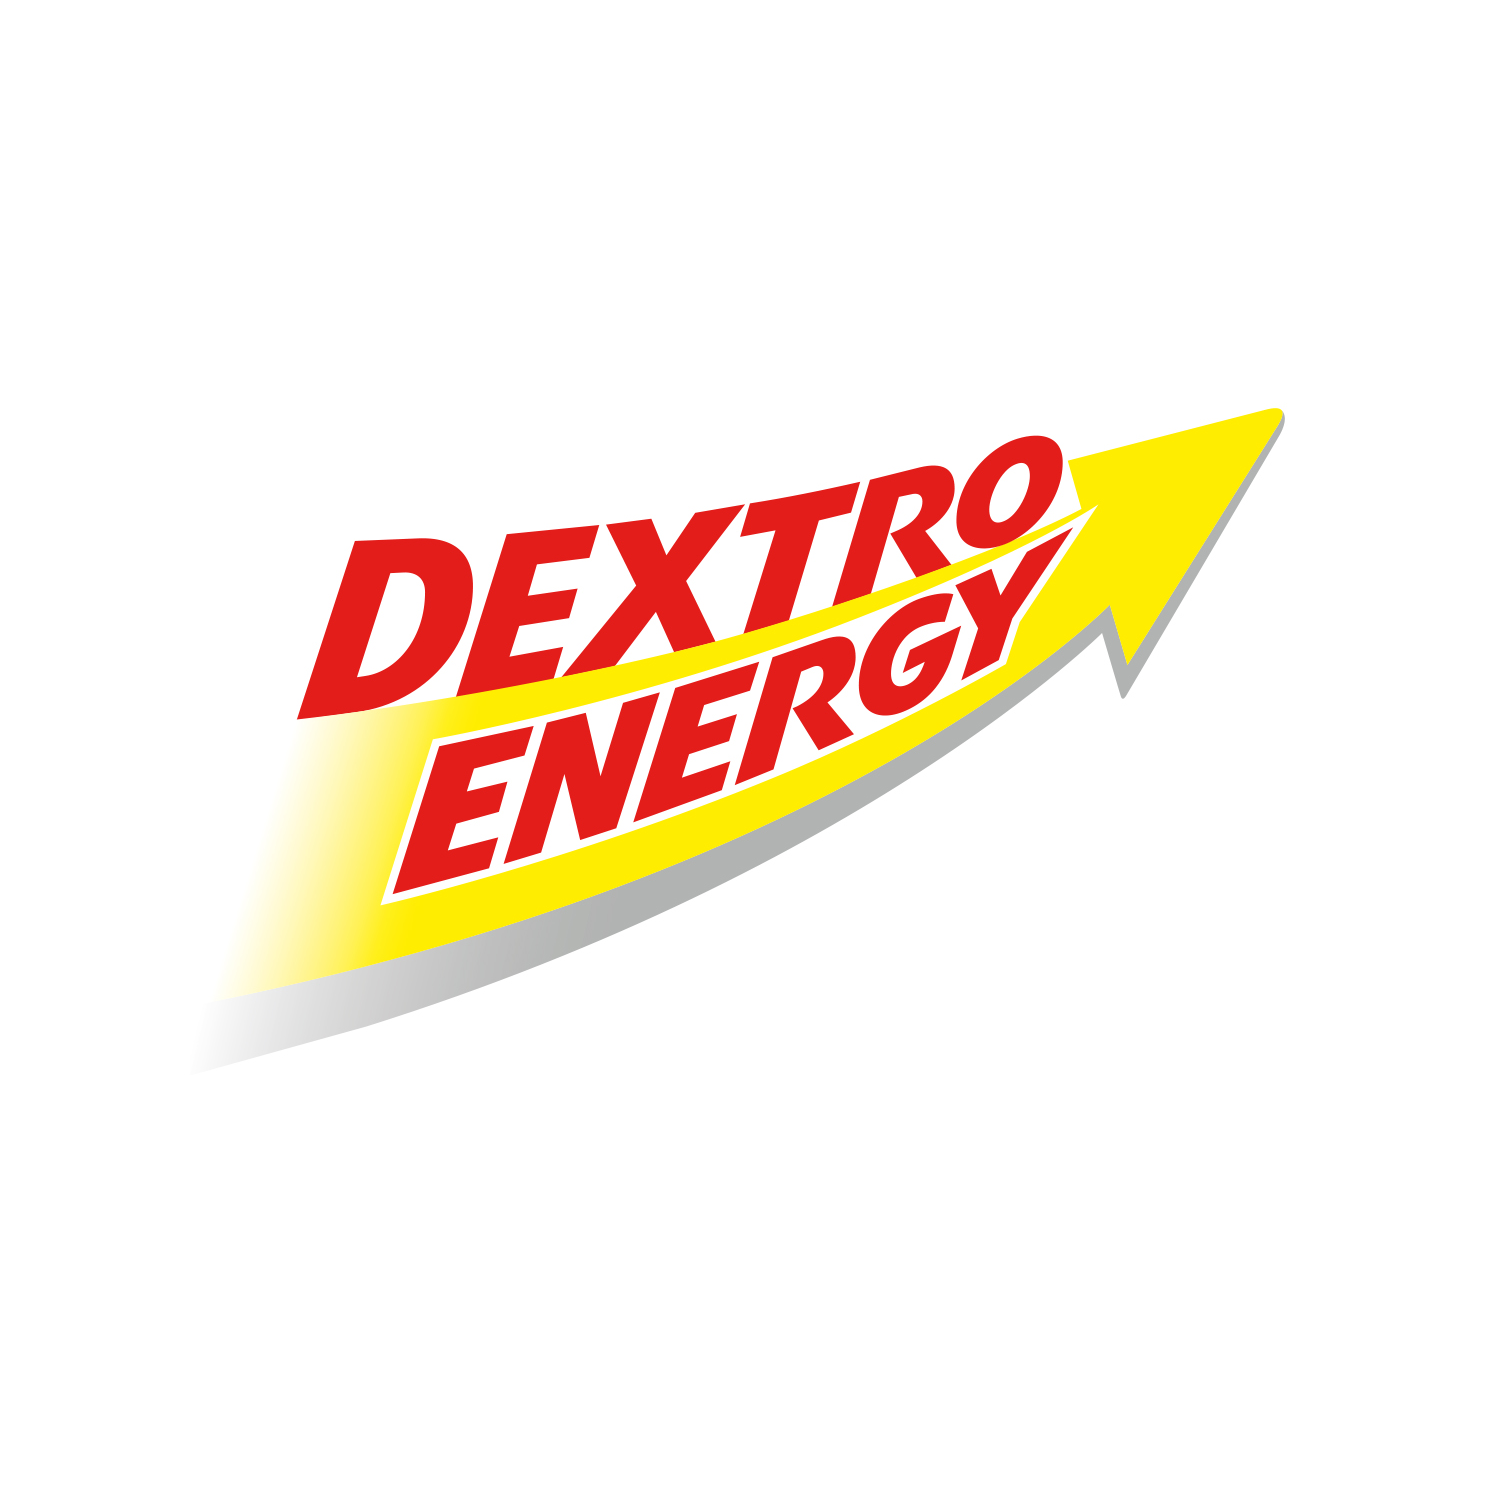 logo_dextro_energy_share_square